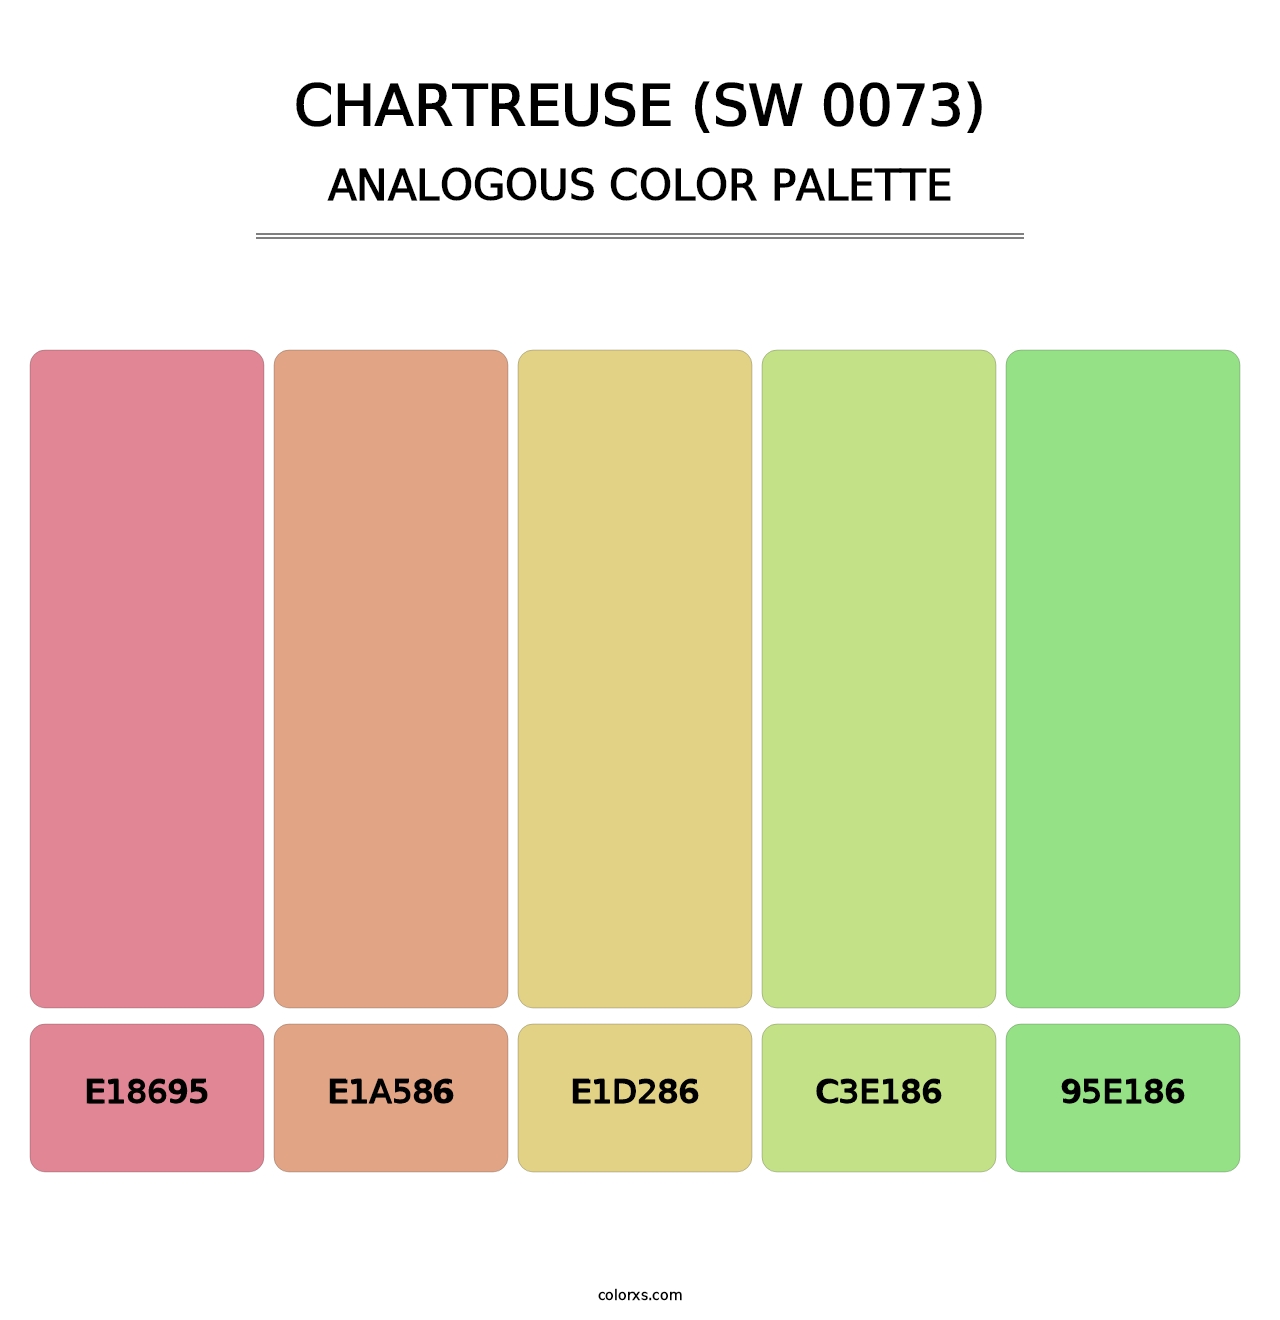 Chartreuse (SW 0073) - Analogous Color Palette